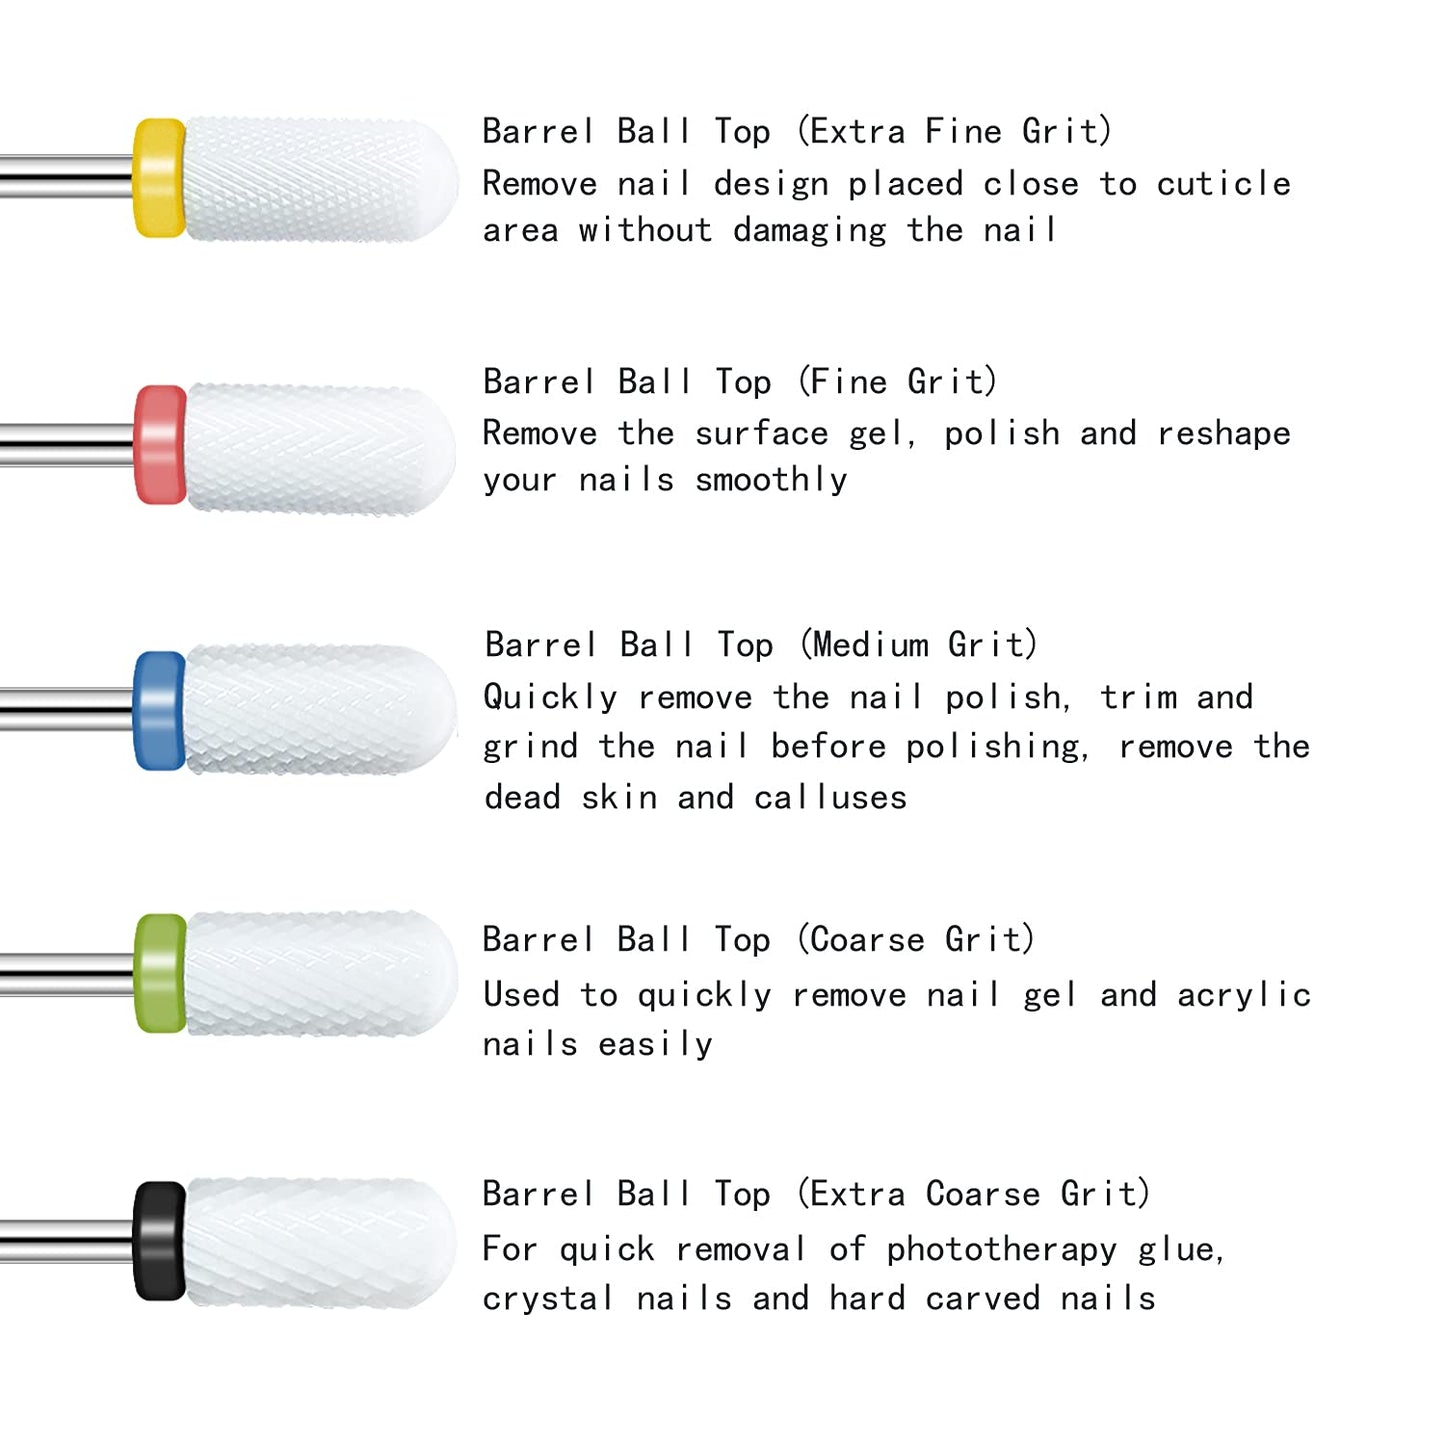 Ceramic Nail Drill Bit Barrel Ball Yellow – Grit: XF (xtra fine) 3/32″